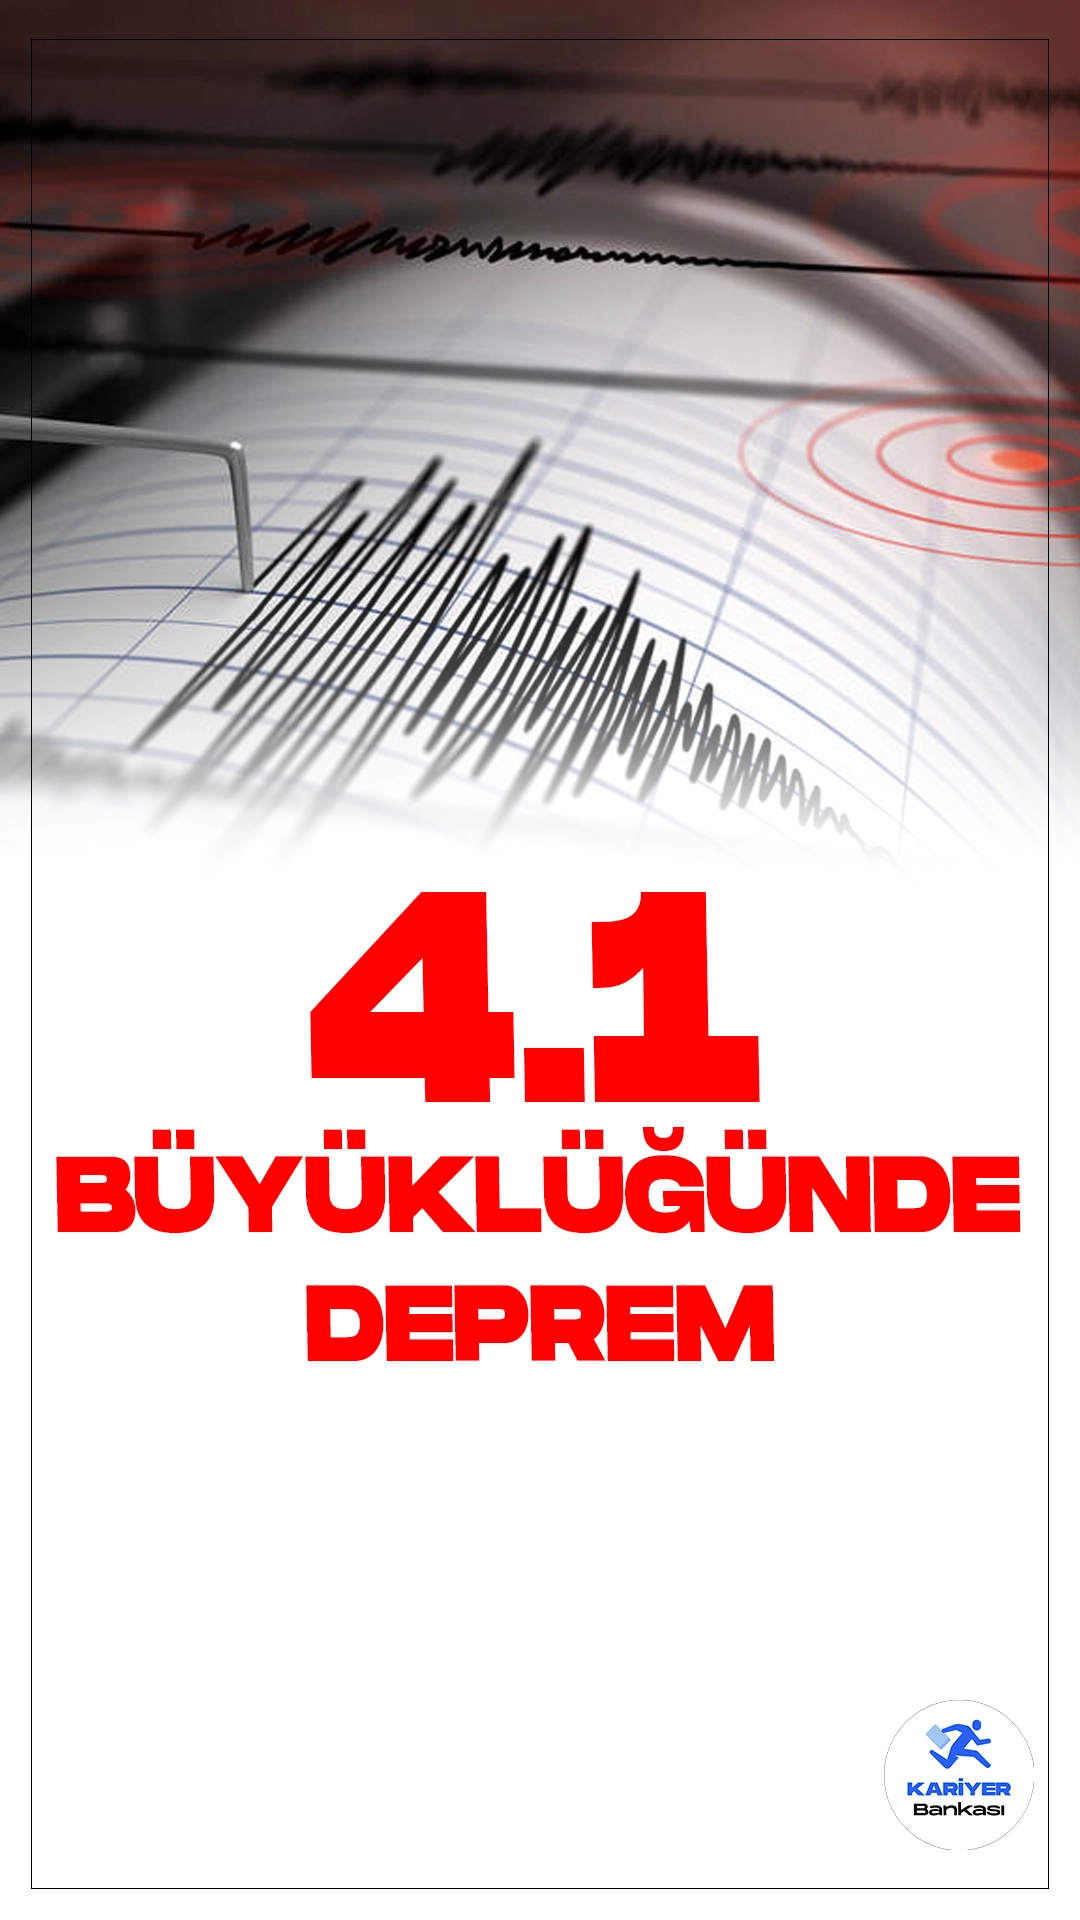 Hatay'da 4.1 Büyüklüğünde Deprem Oldu.İçişleri Bakanlığı Afet ve Acil Durum Yönetimi Başkanlığı sayfası üzerinden yayımlanan verilerde, Hatay'ın Antakya ilçesinde 4.1 büyüklüğünde deprem meydana geldiği aktarıldı.